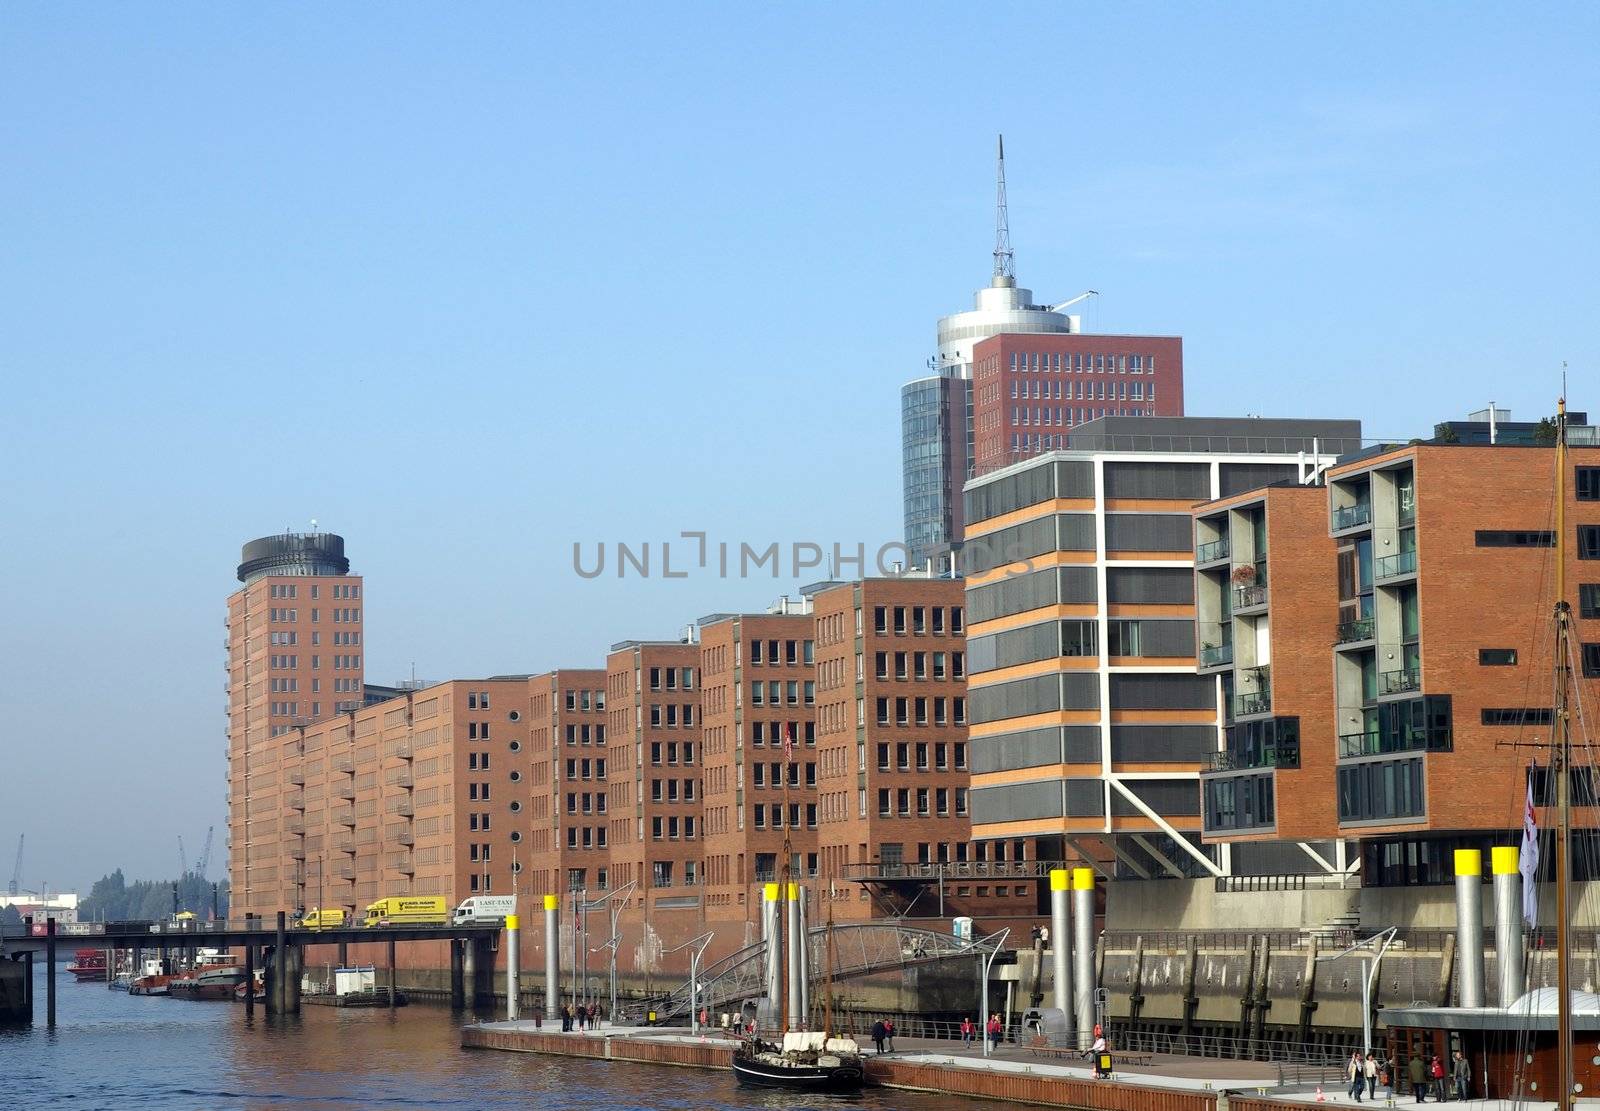 The new Hamburgs HafenCity